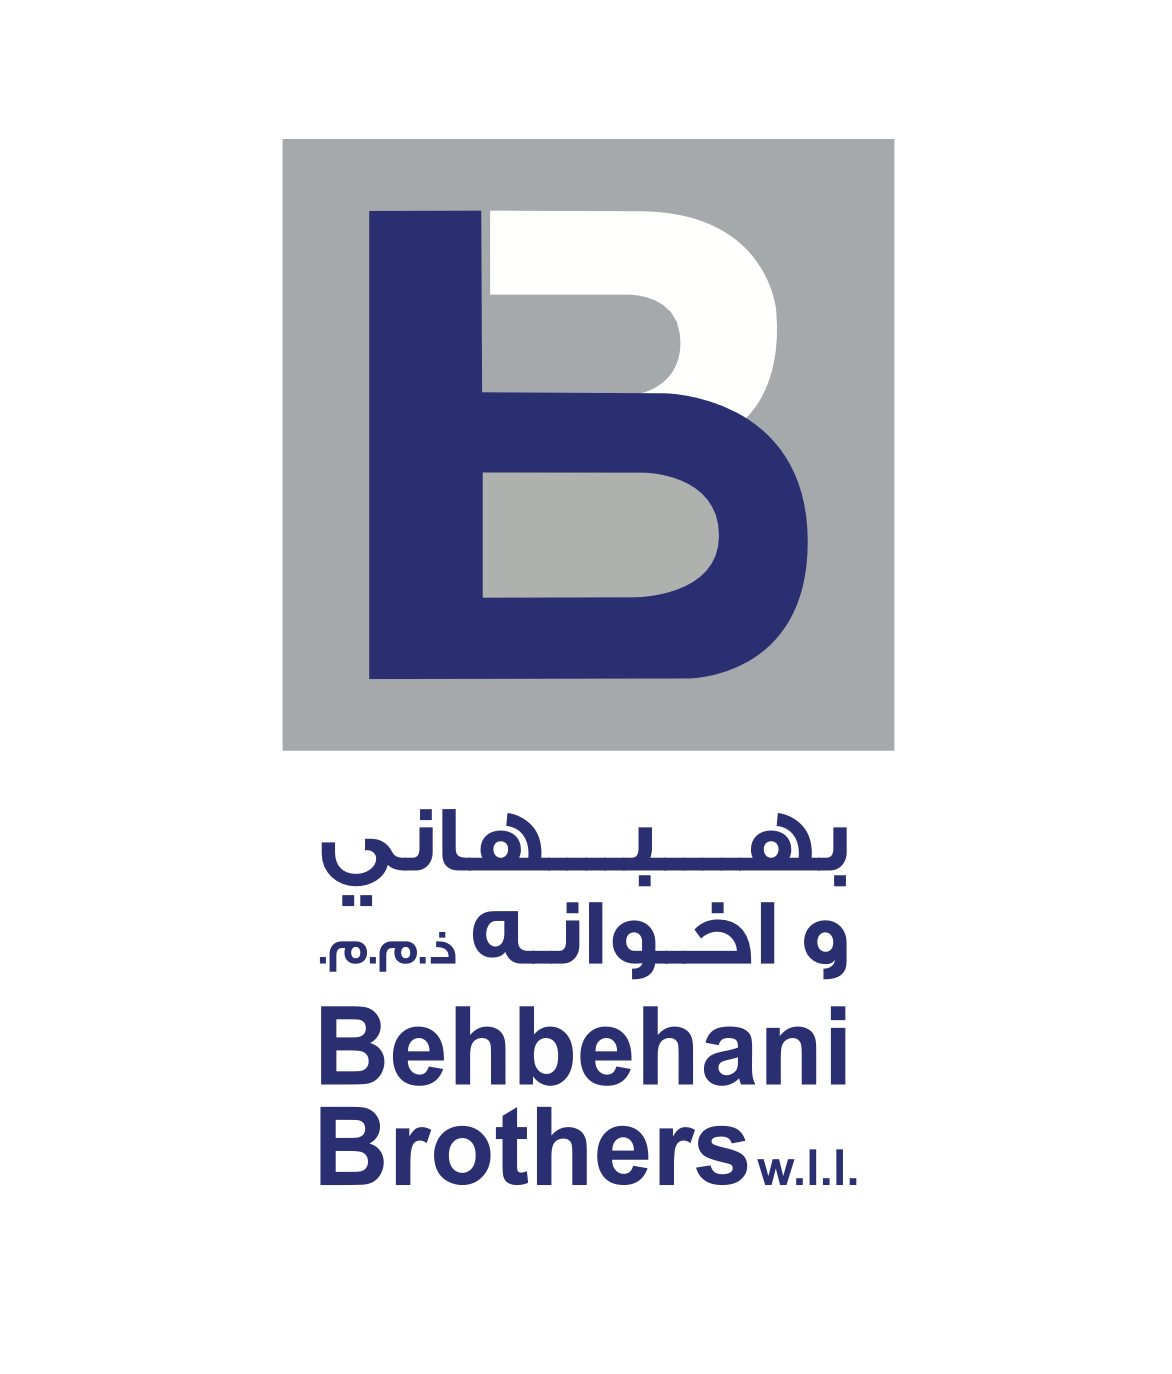 Behbehani Bros